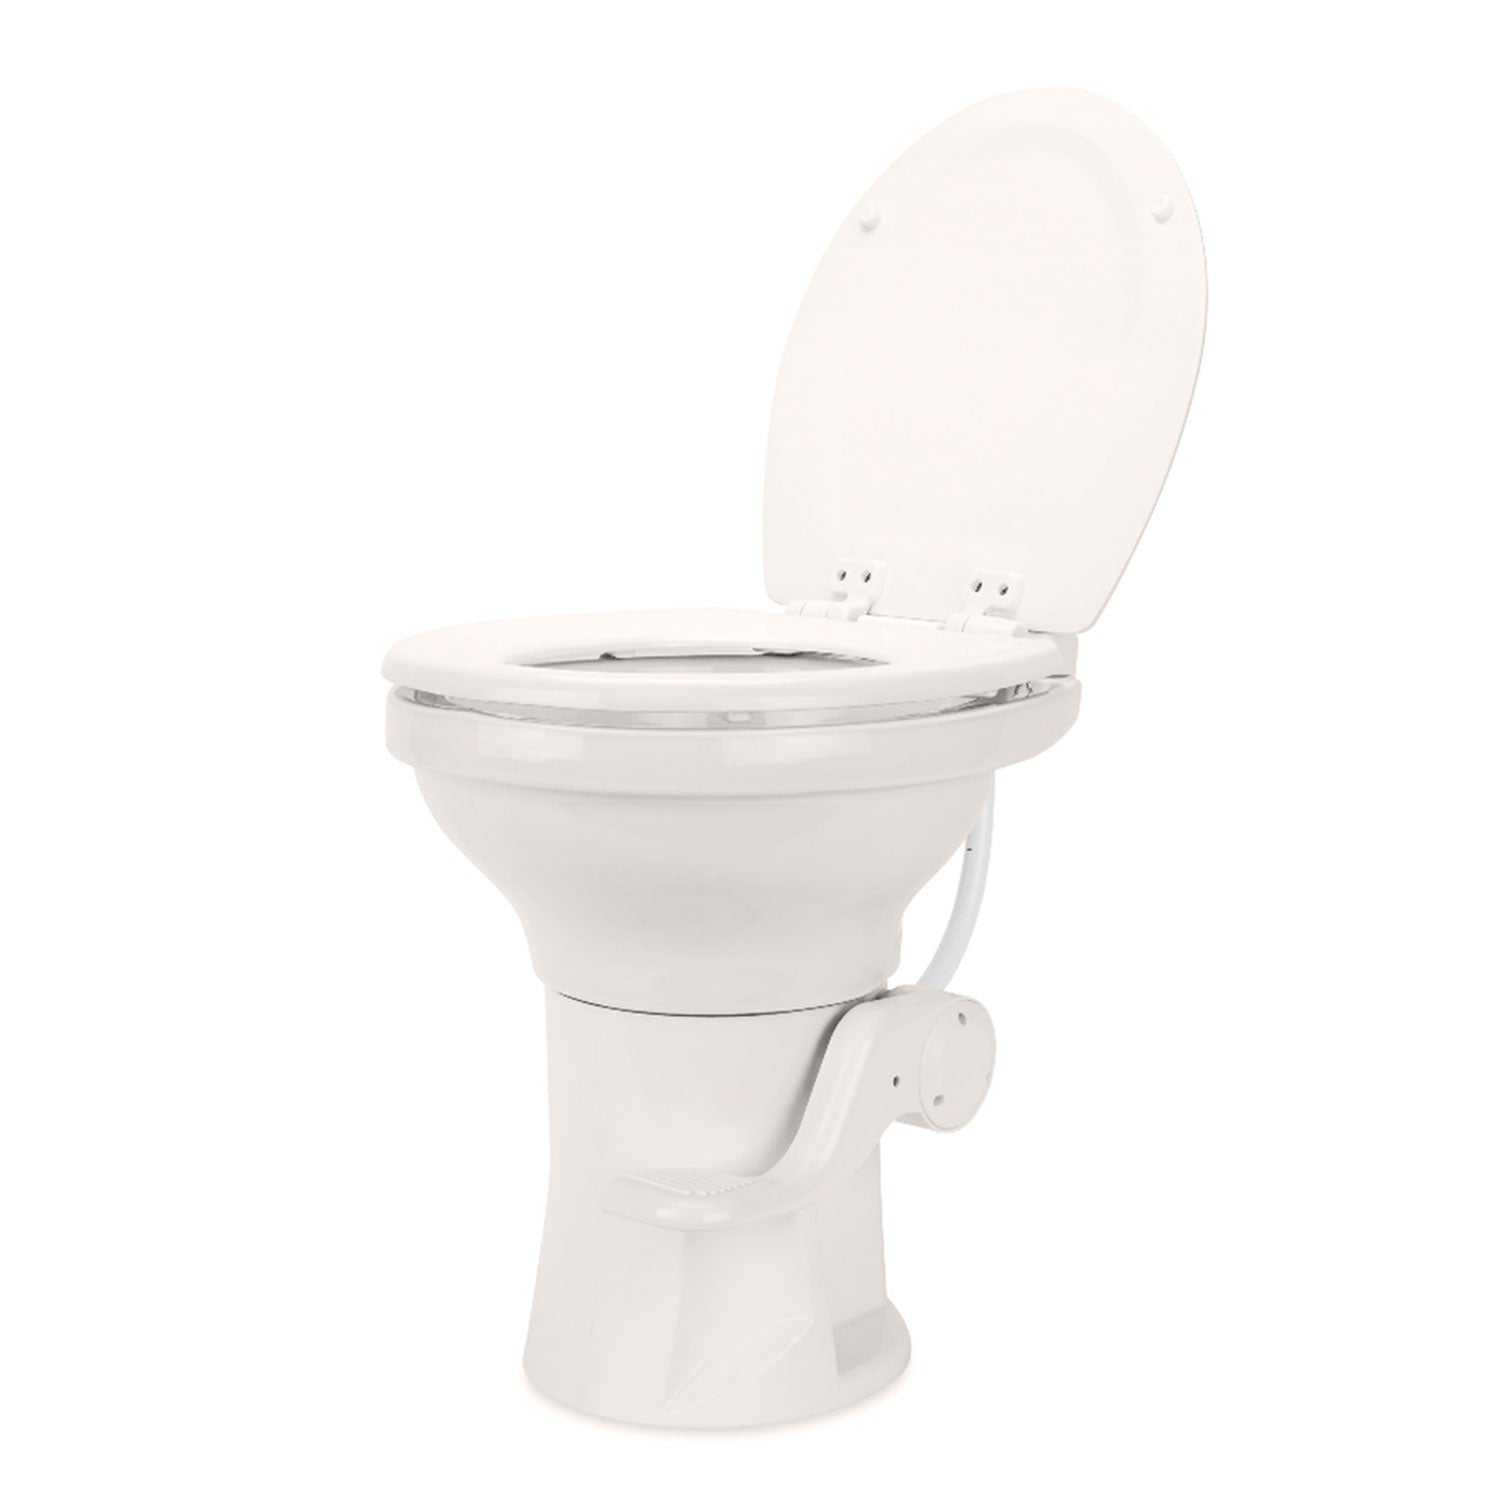 Camco 41715 Premium Ceramic RV Toilet with Ergonomic Design - Bone